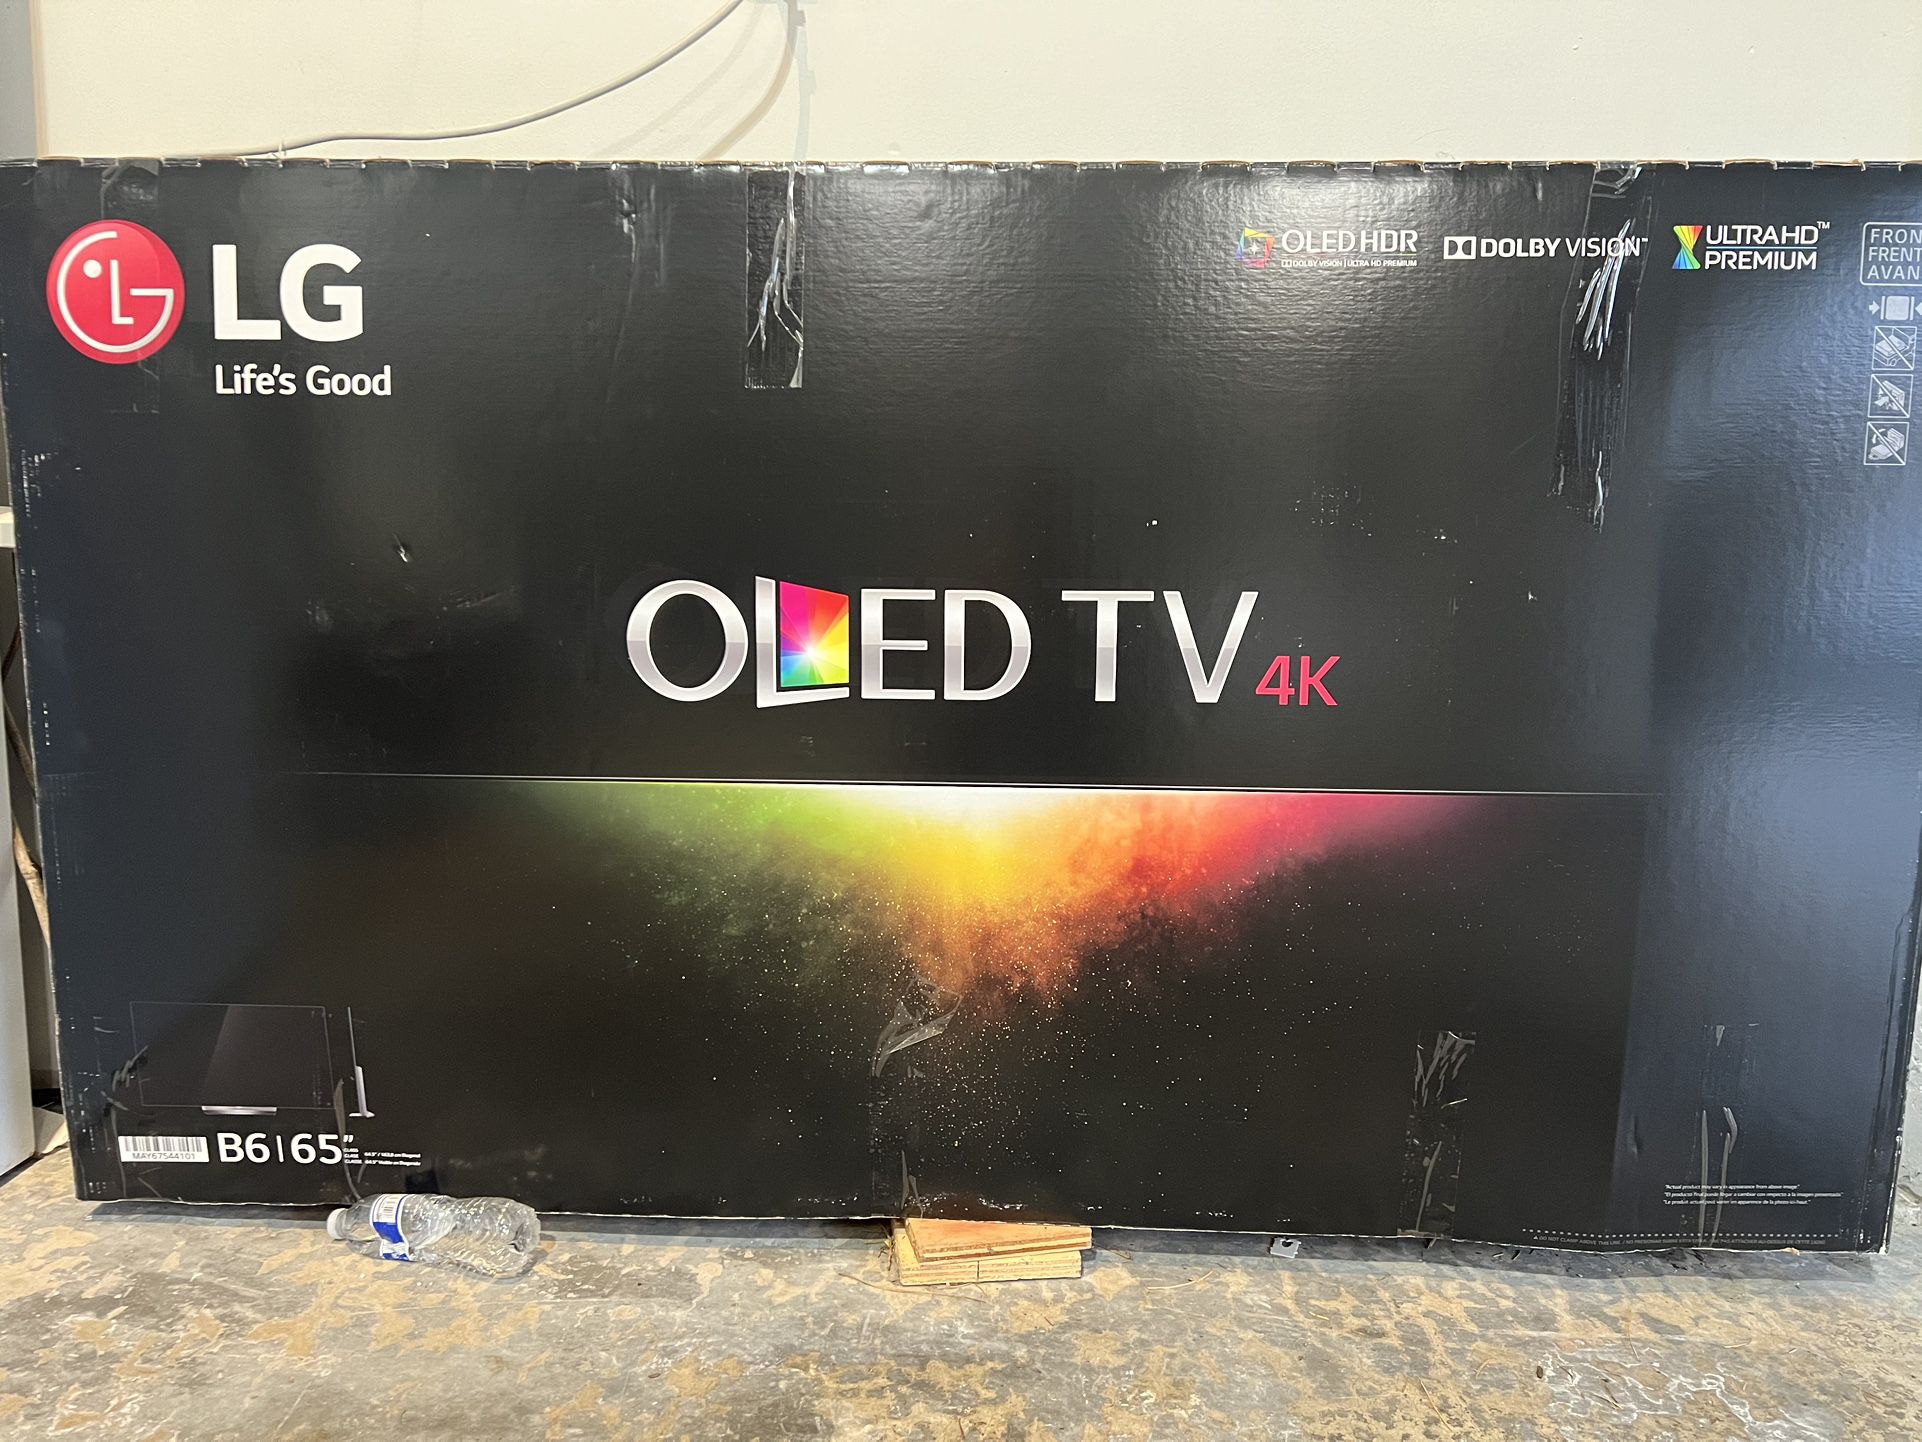 LG OLED TV 4K 